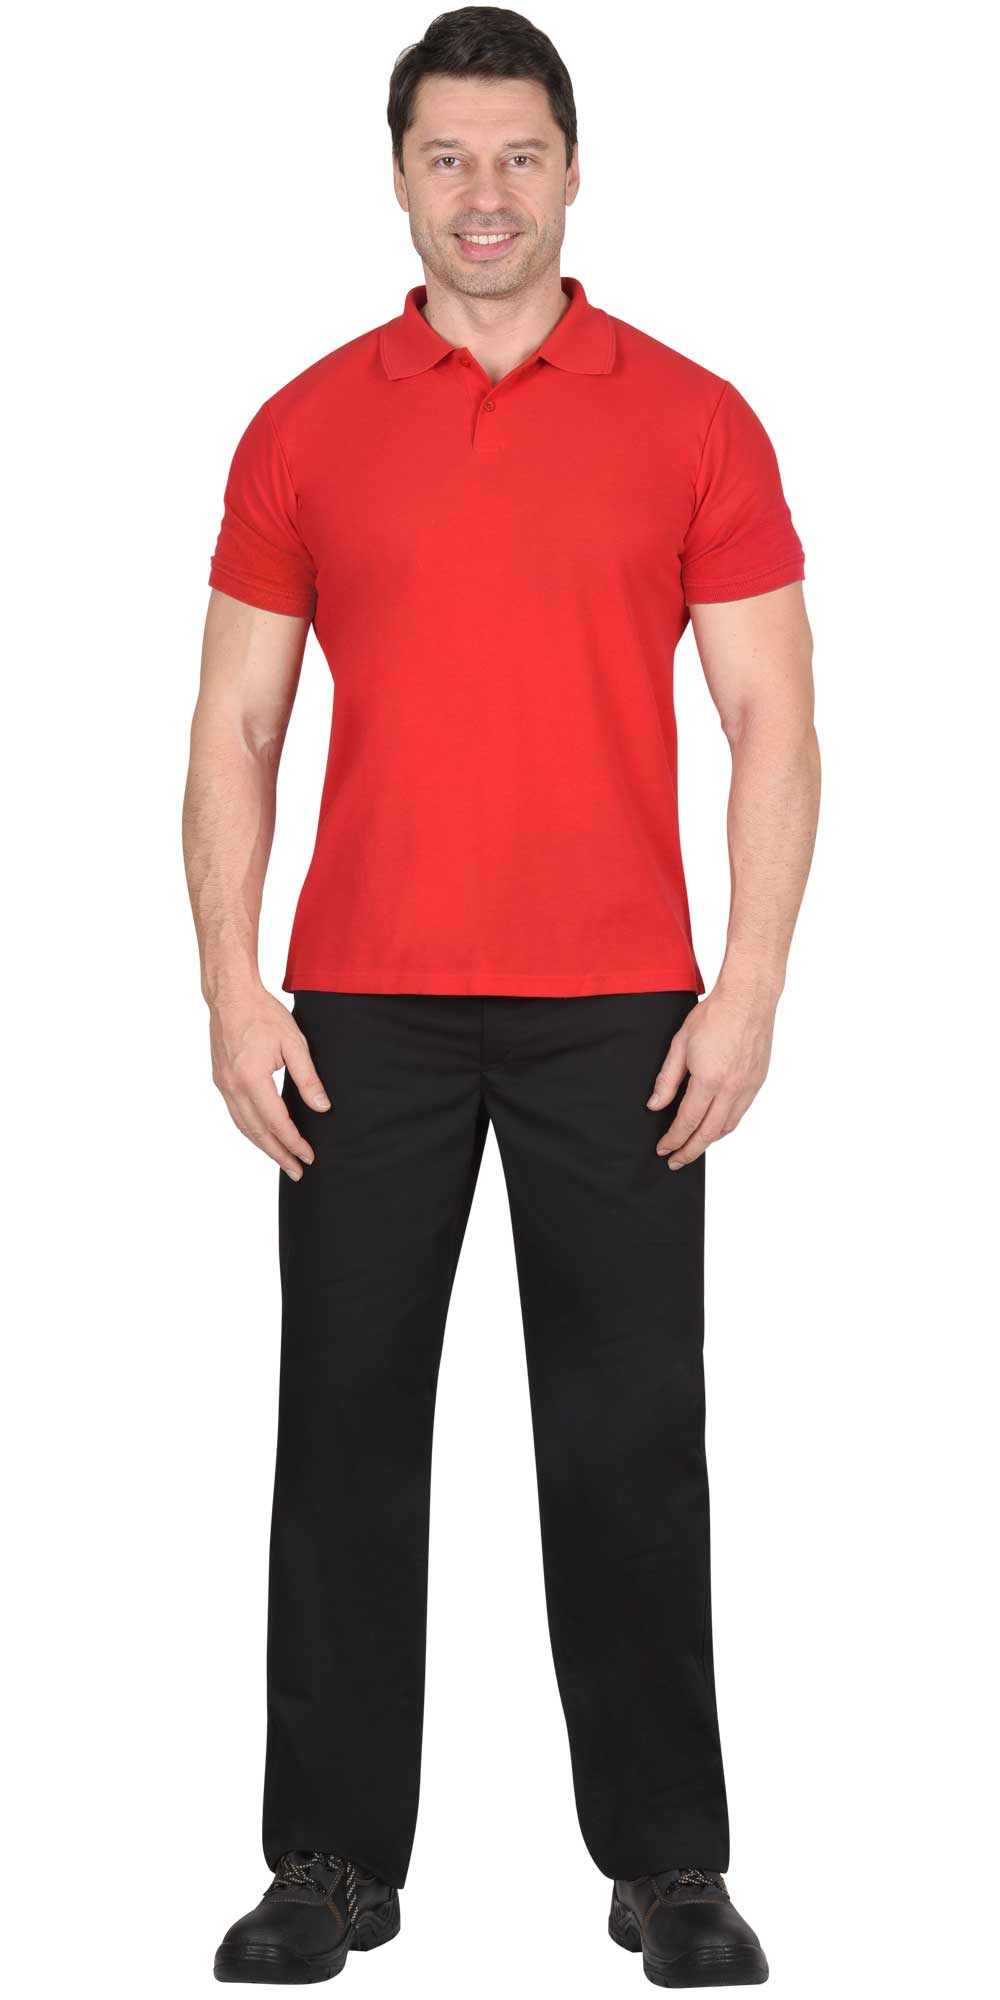 Рубашка-поло мужская, рукав короткий, цвет: красный, плотность 180г/кв.м